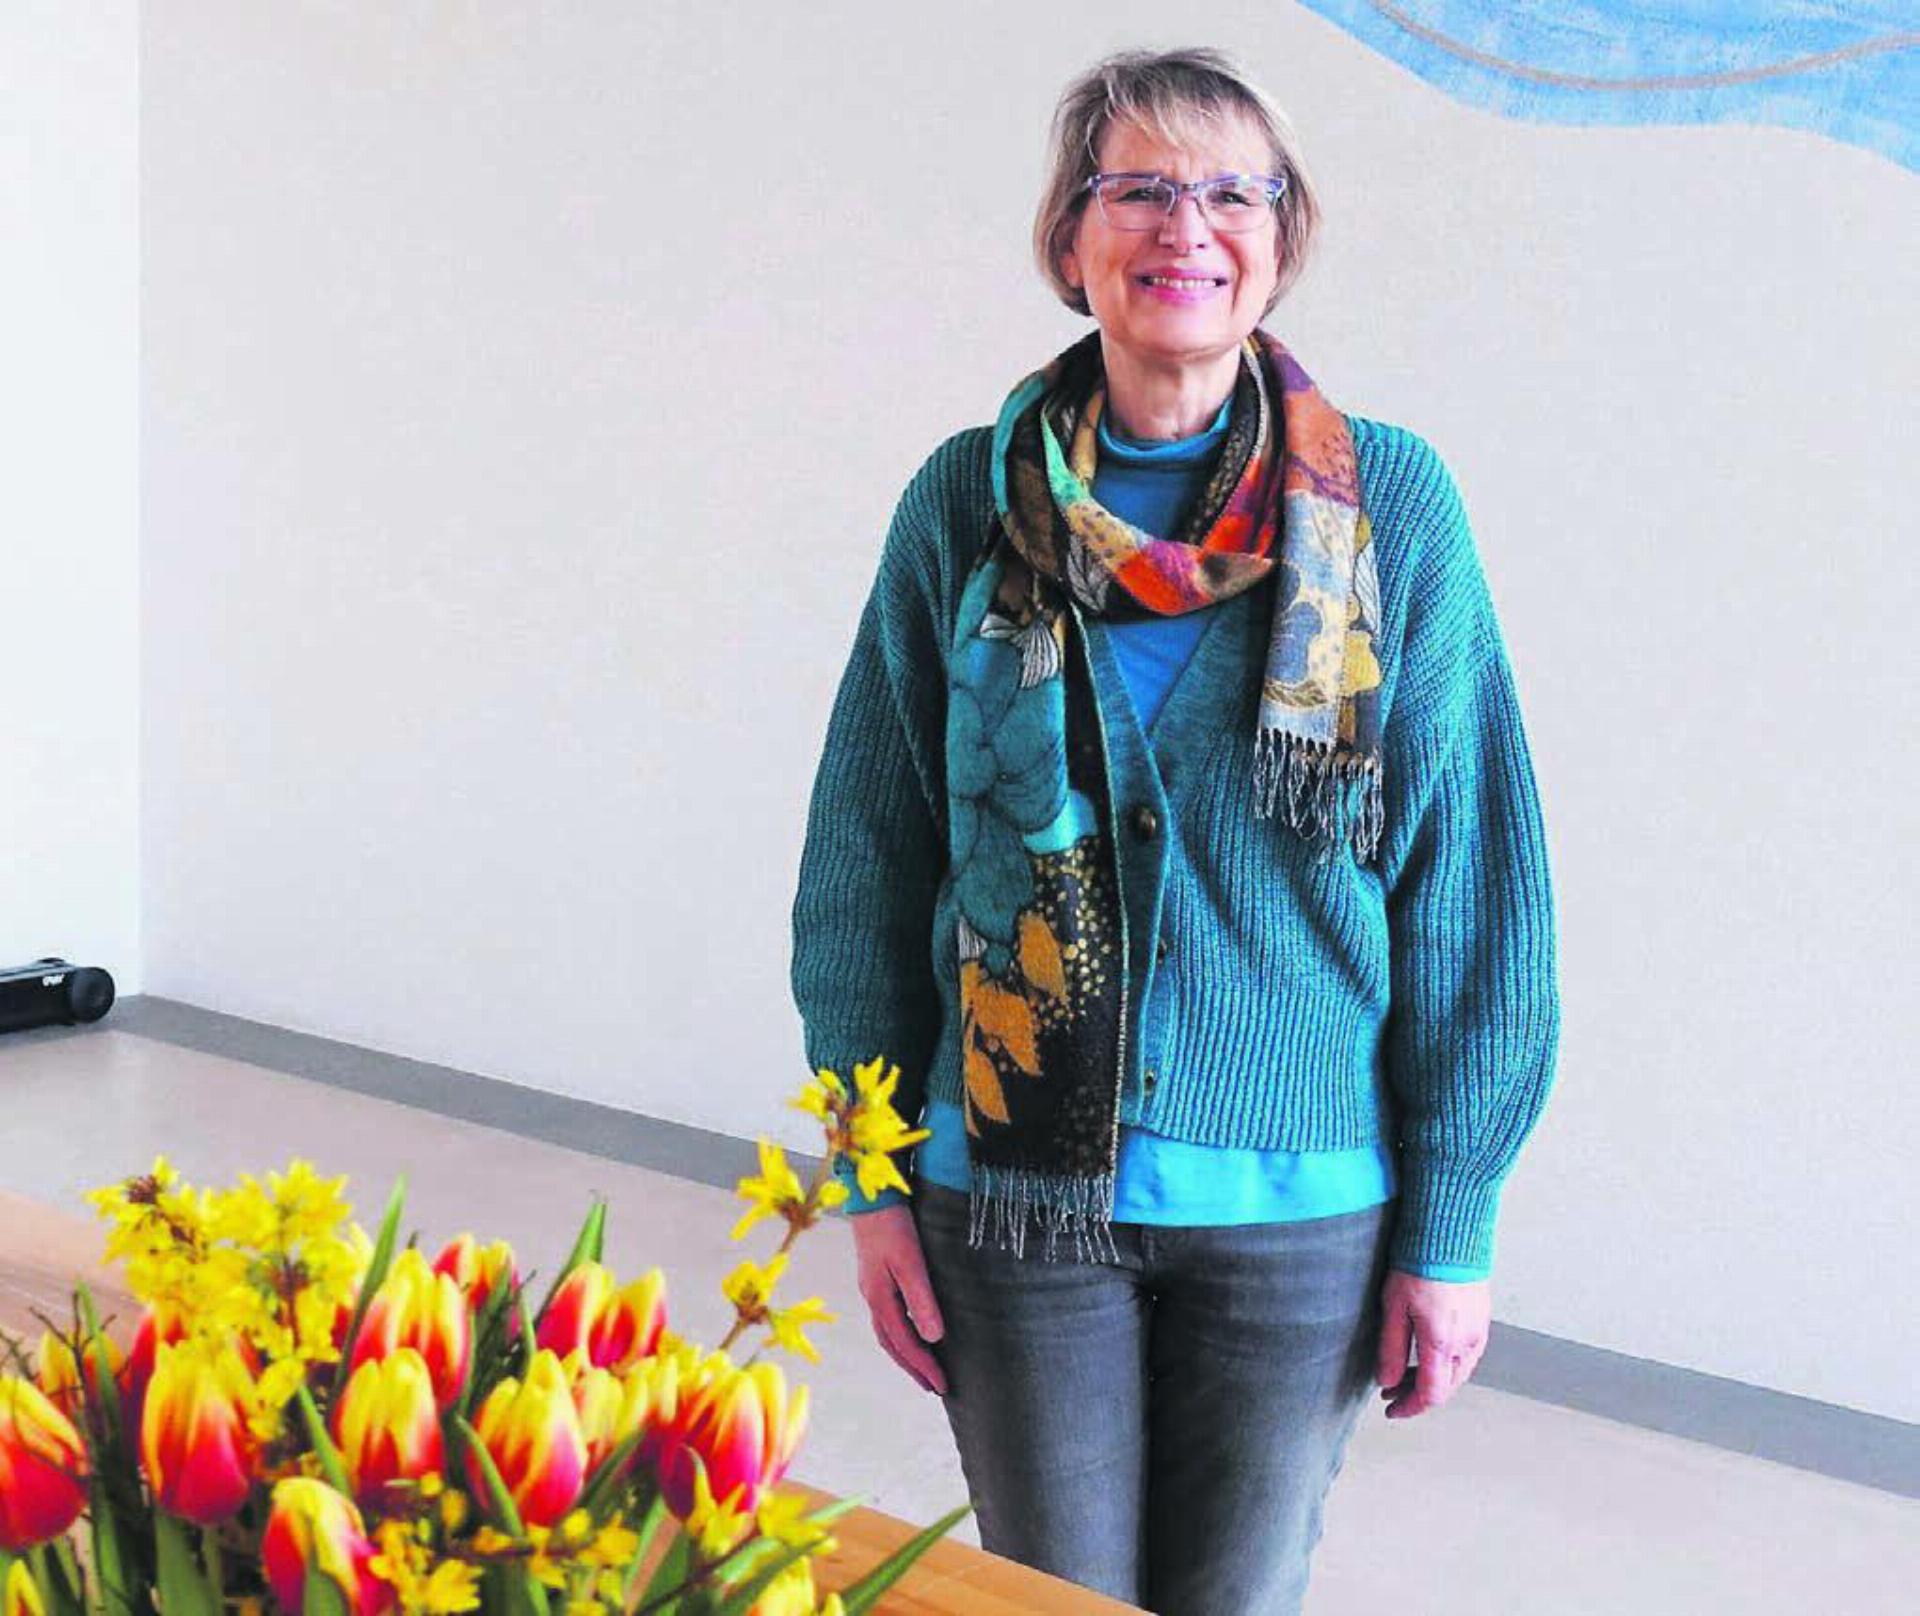 Bettina Lukoschus findet selbst nach 30 Jahren den Beruf als Pfarrerin immer noch sehr spannend. Bild: Susanne Schild